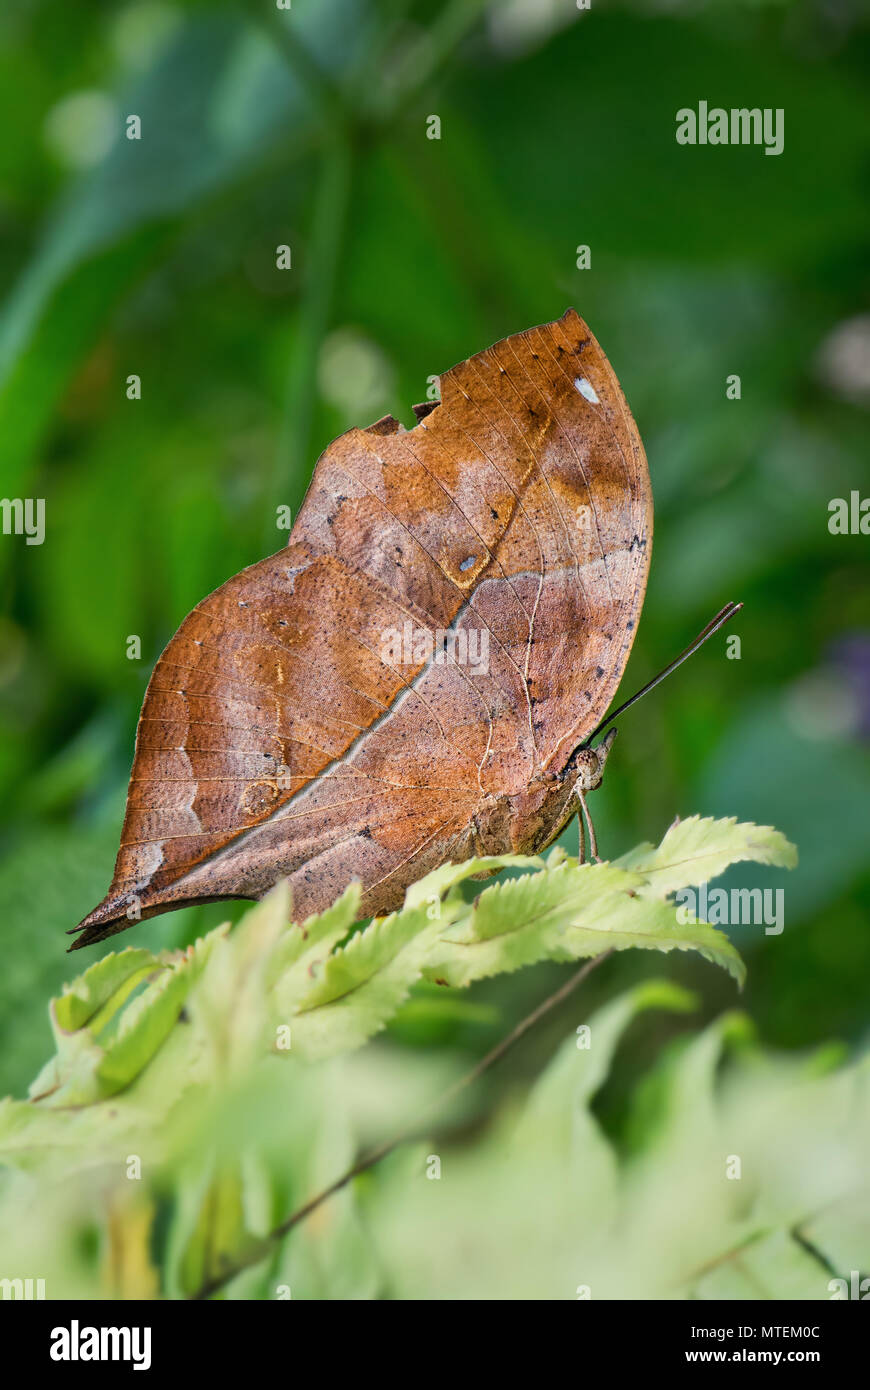 Hoja de Otoño - Doleschallia bisaltide mariposas de ala, hermosa mariposa desde el sur de Asia y Australia. Foto de stock